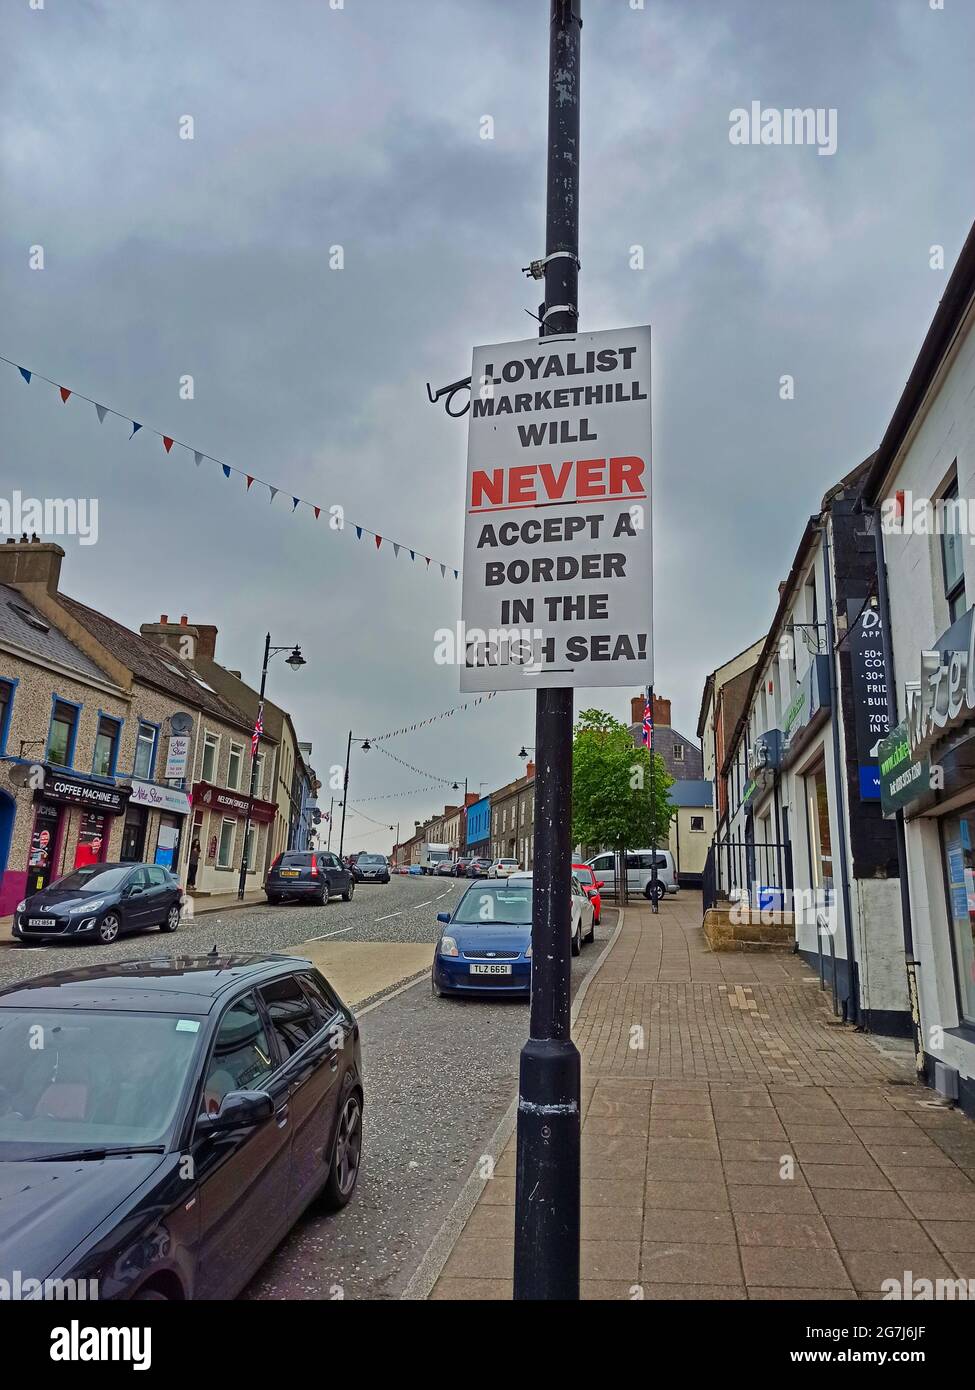 Un segno fissato ad un lampione dà il messaggio che il popolo Loyalist di Markethill ad Armagh non accetta il protocollo dell'Irlanda del Nord, parte del Th Foto Stock